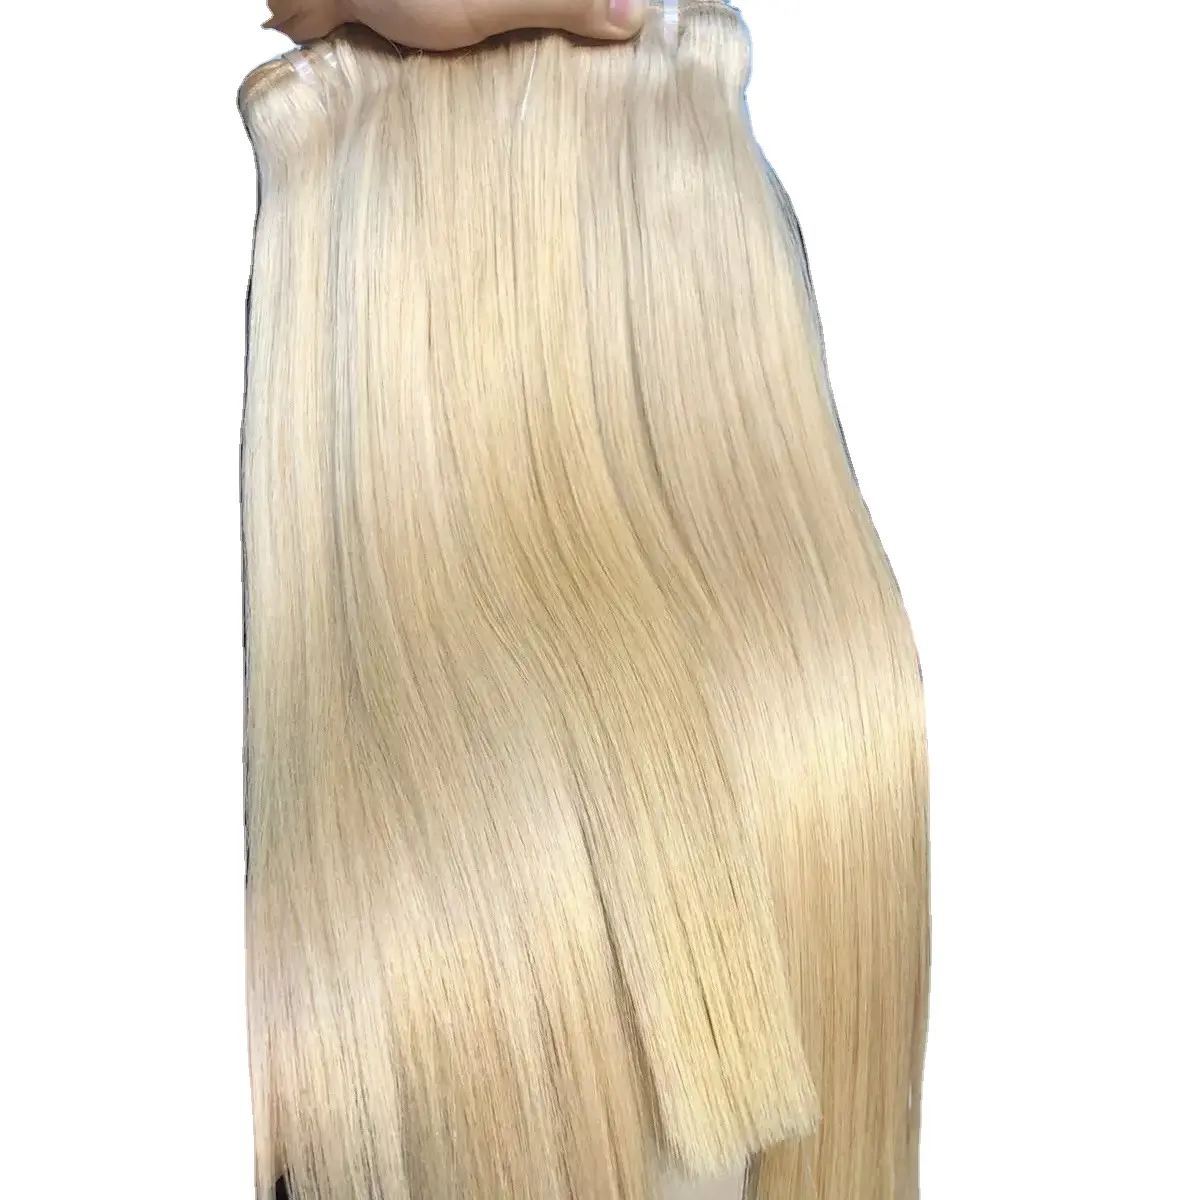 सबसे अच्छा गुणवत्ता मानव बाल एक्सटेंशन गैर रासायनिक 613 रंग, कुंवारी बाल छल्ली गठबंधन बंडलों प्रतिस्पर्धी मूल्य